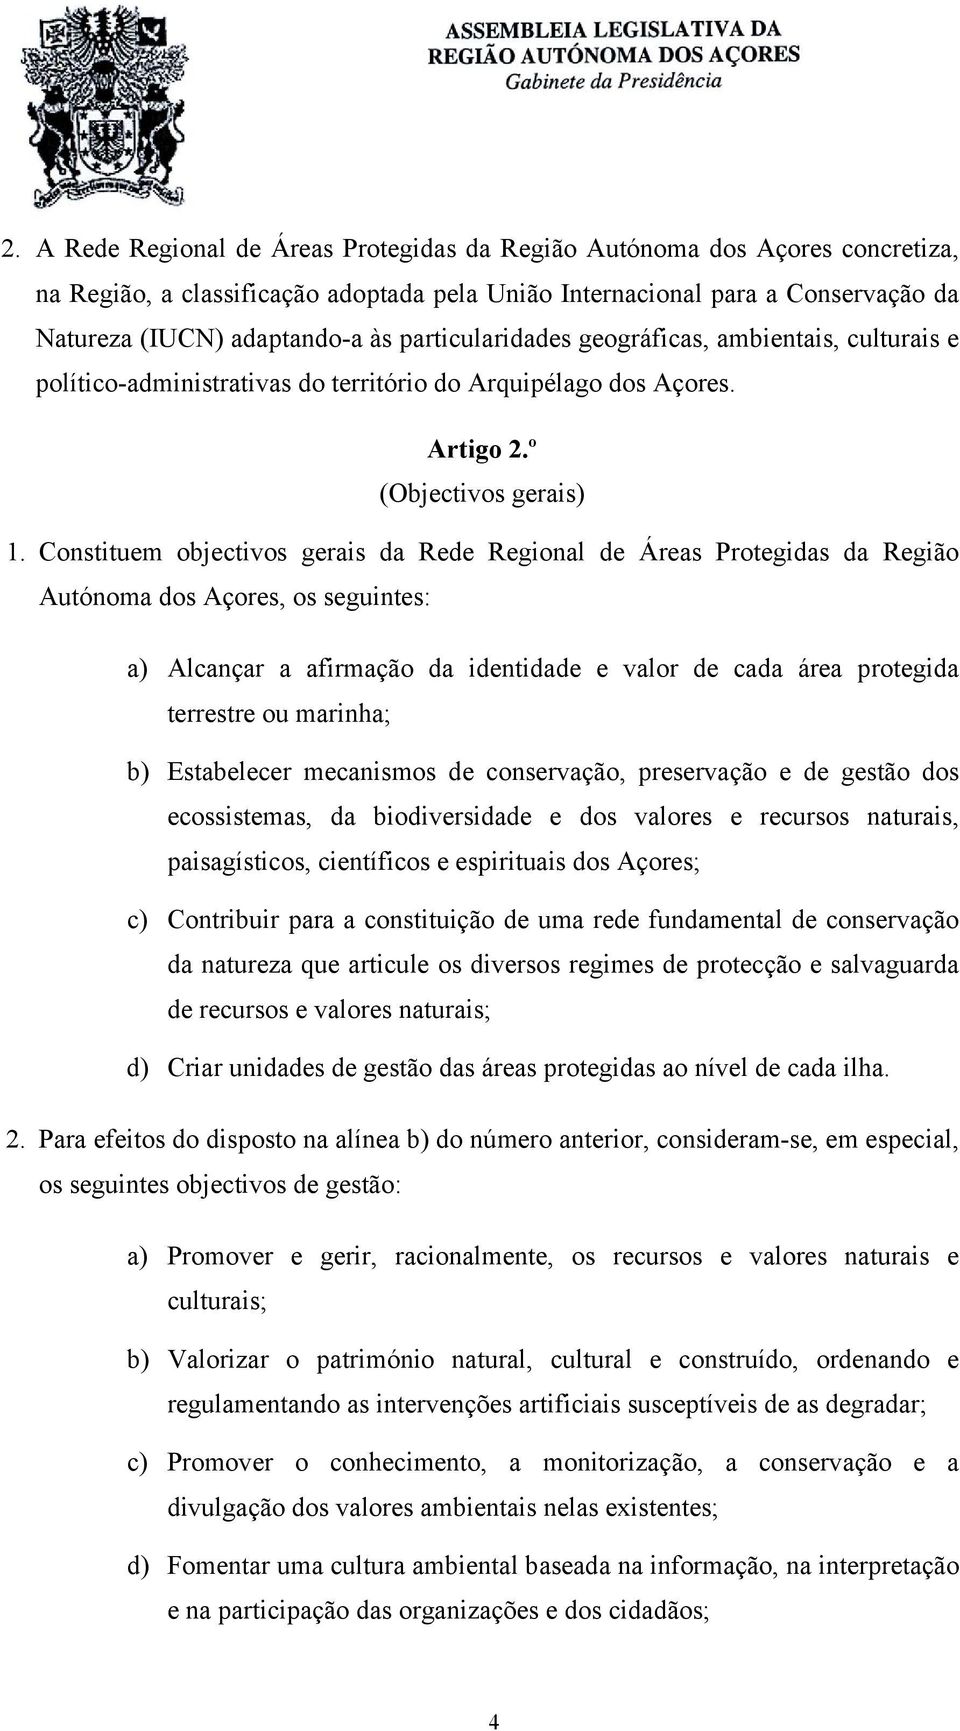 Constituem objectivos gerais da Rede Regional de Áreas Protegidas da Região Autónoma dos Açores, os seguintes: a) Alcançar a afirmação da identidade e valor de cada área protegida terrestre ou